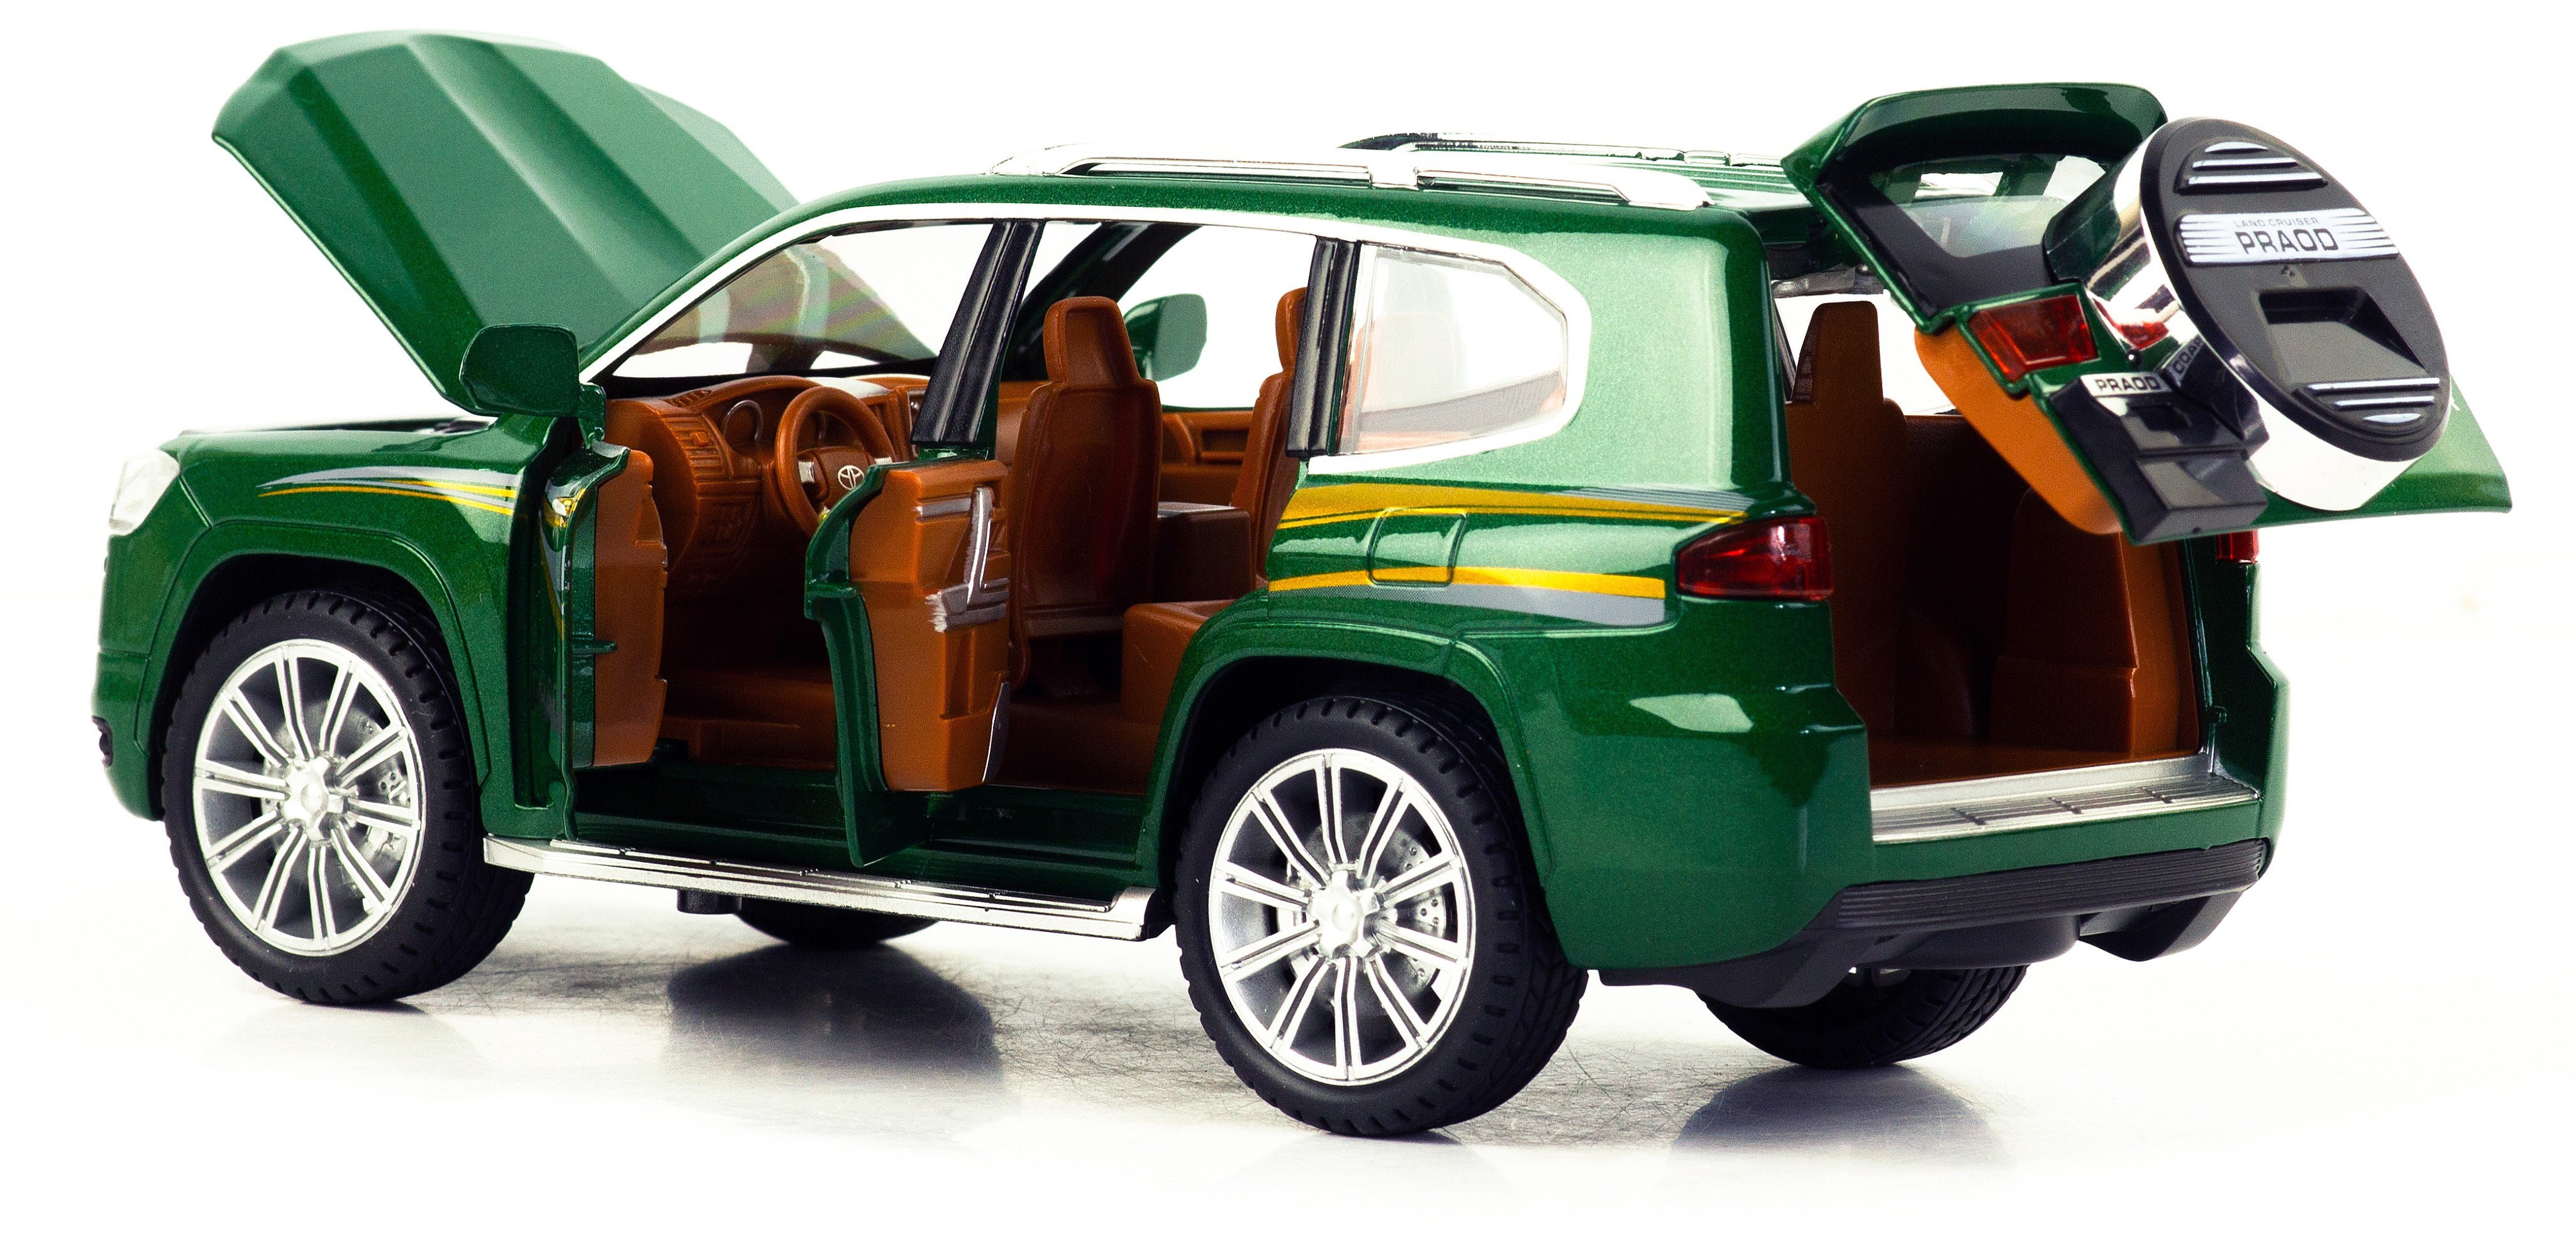 Металлическая машинка Model Car 1:24 «Toyota Land Cruiser Prado» 5524, 21 см., инерционная, свет, звук / Зеленый